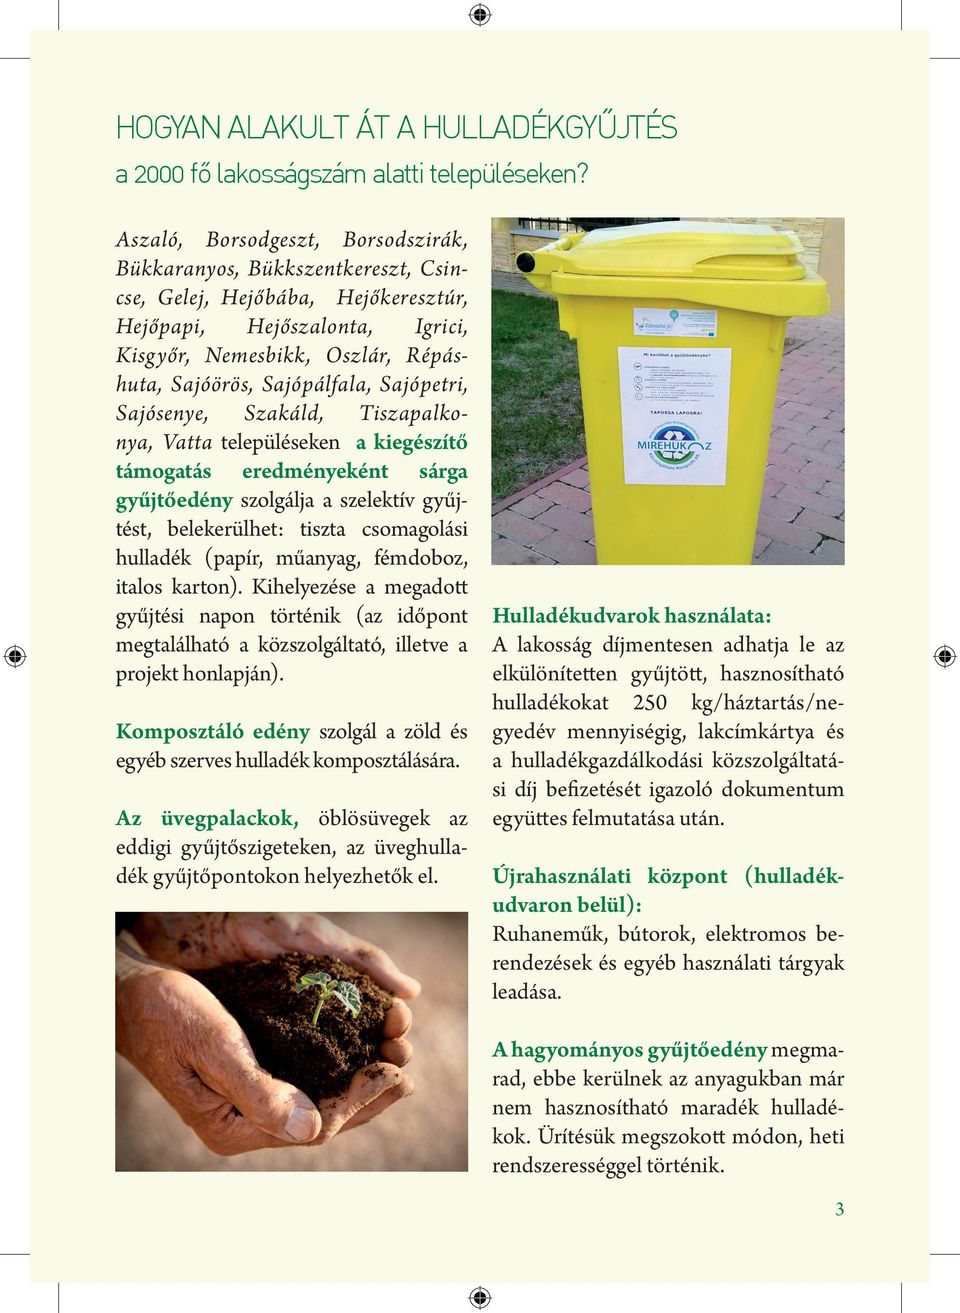 Sajópálfala, Sajópetri, Sajósenye, Szakáld, Tiszapalkonya, Vatta településeken a kiegészítő támogatás eredményeként sárga gyűjtőedény szolgálja a szelektív gyűjtést, belekerülhet: tiszta csomagolási